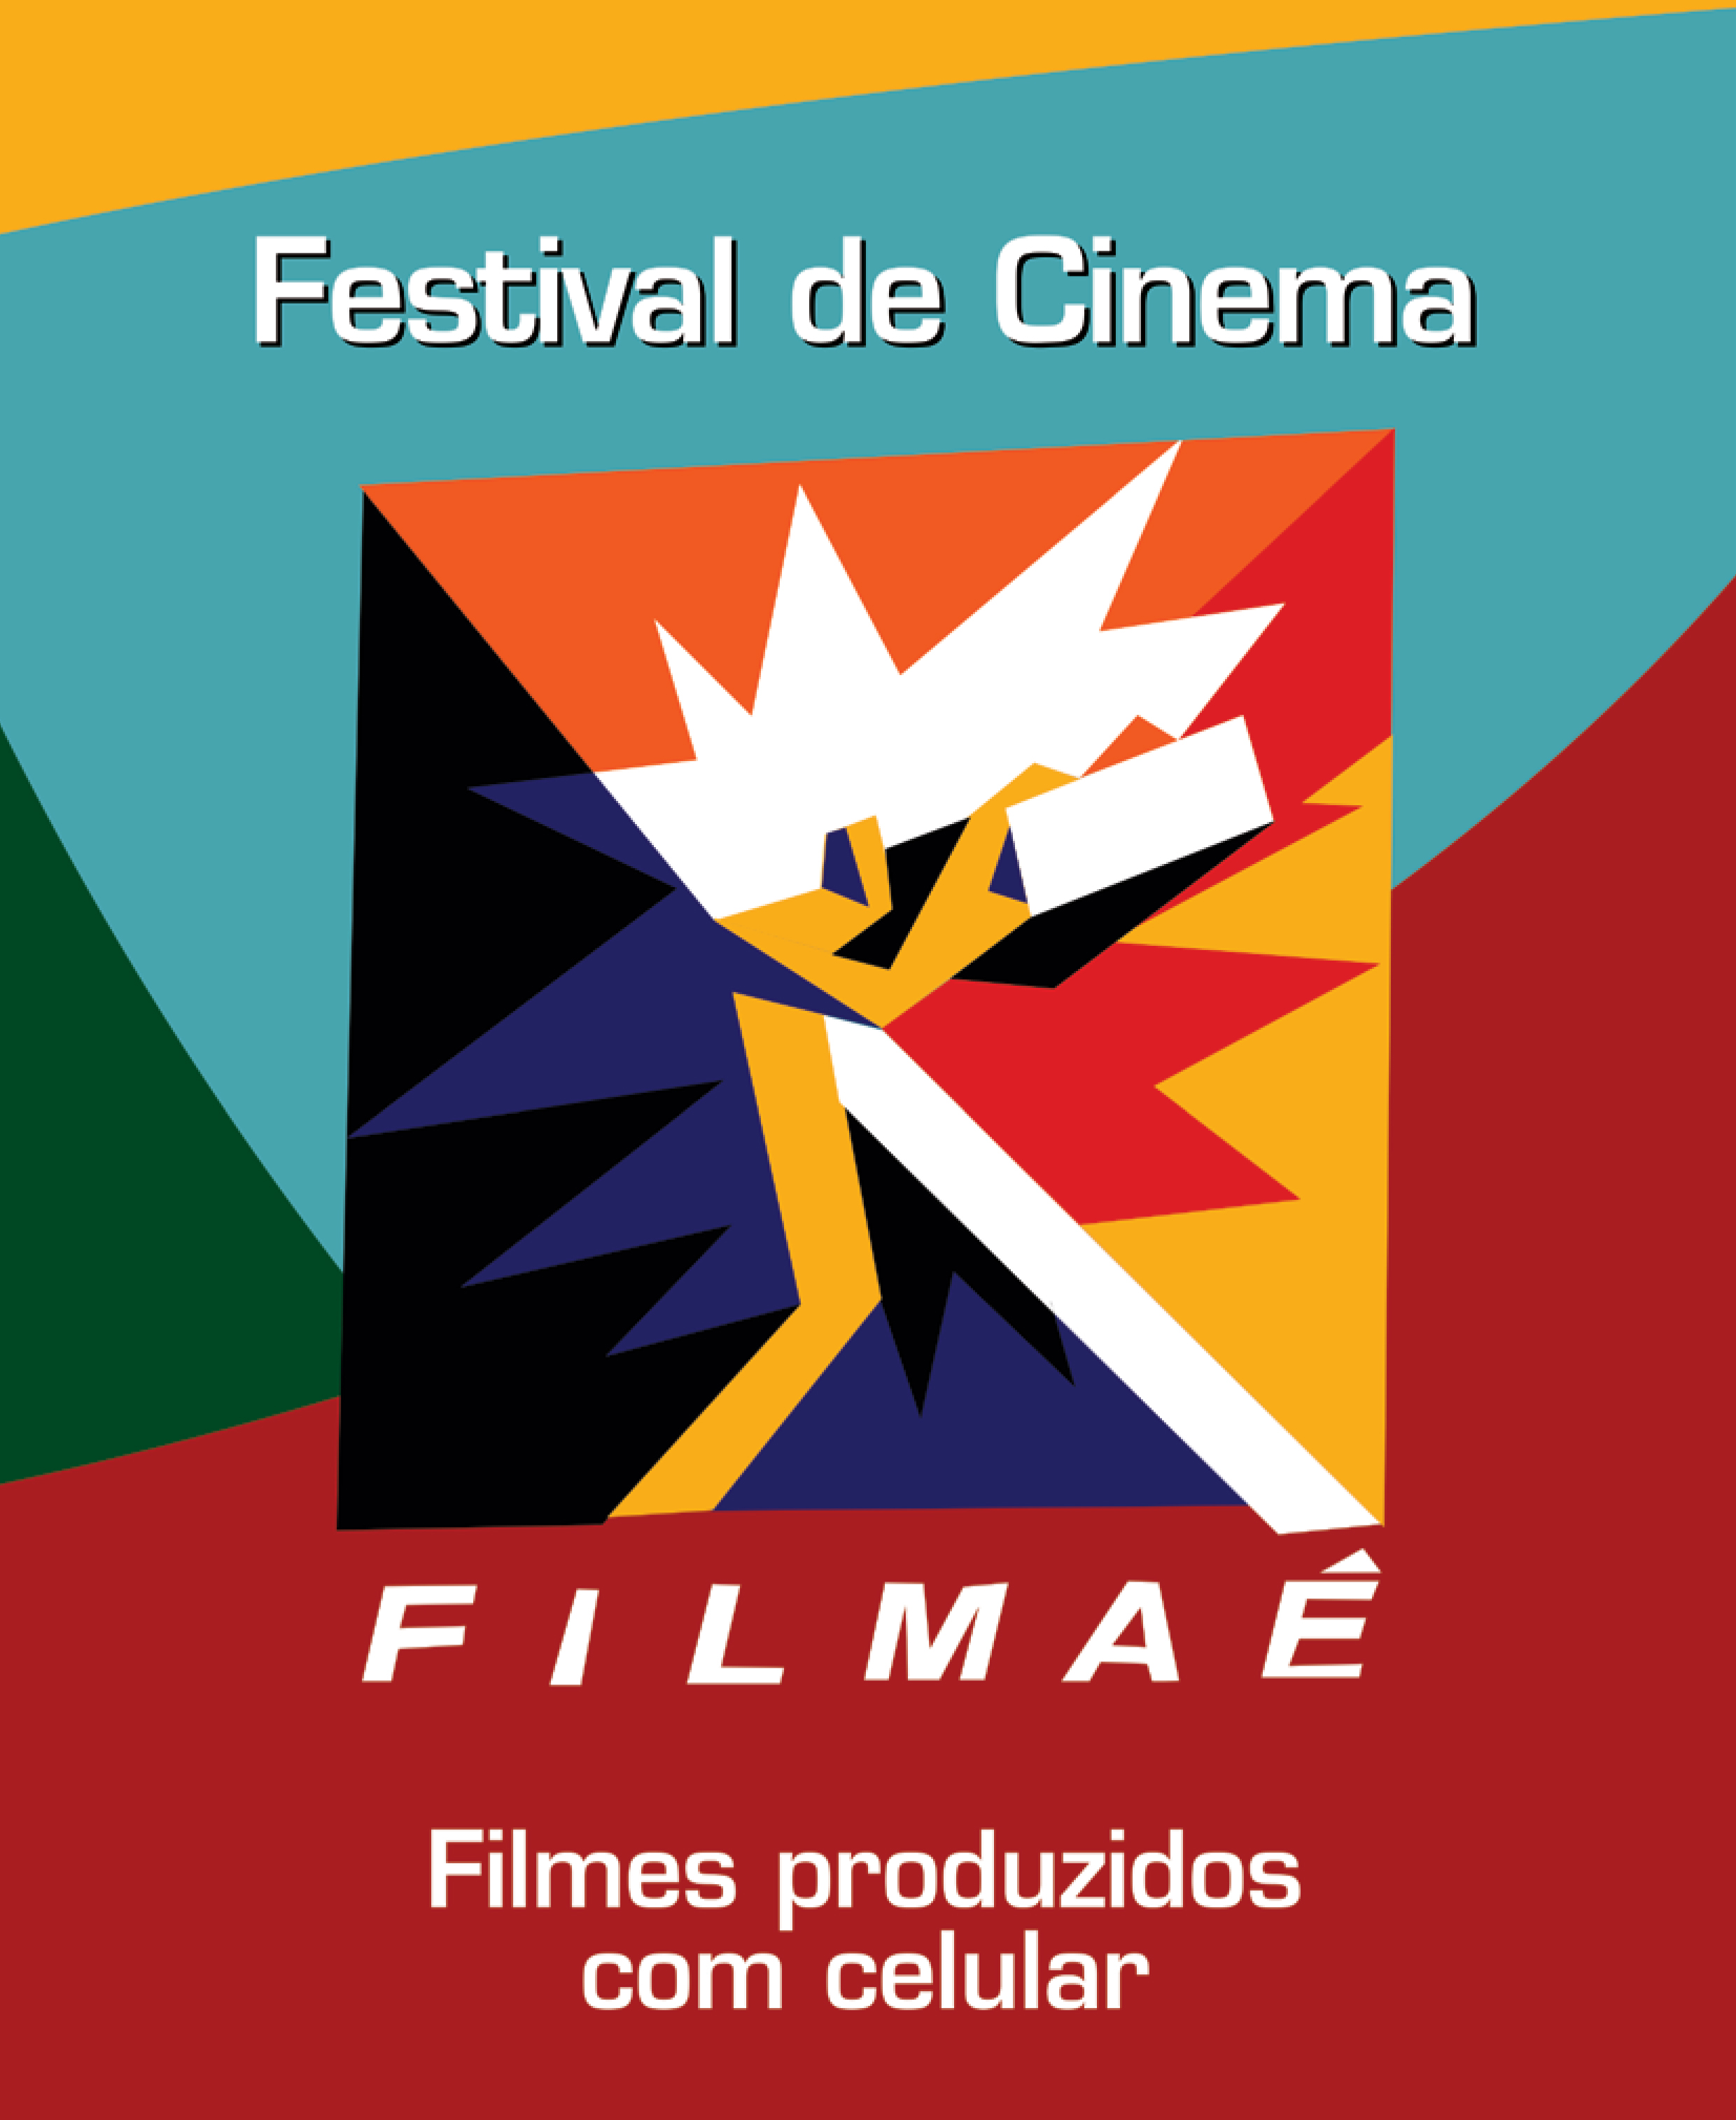 Filmaê, festival de filmes produzidos com celular, chega à sua 3ª Edição de 25 a 28 de maio